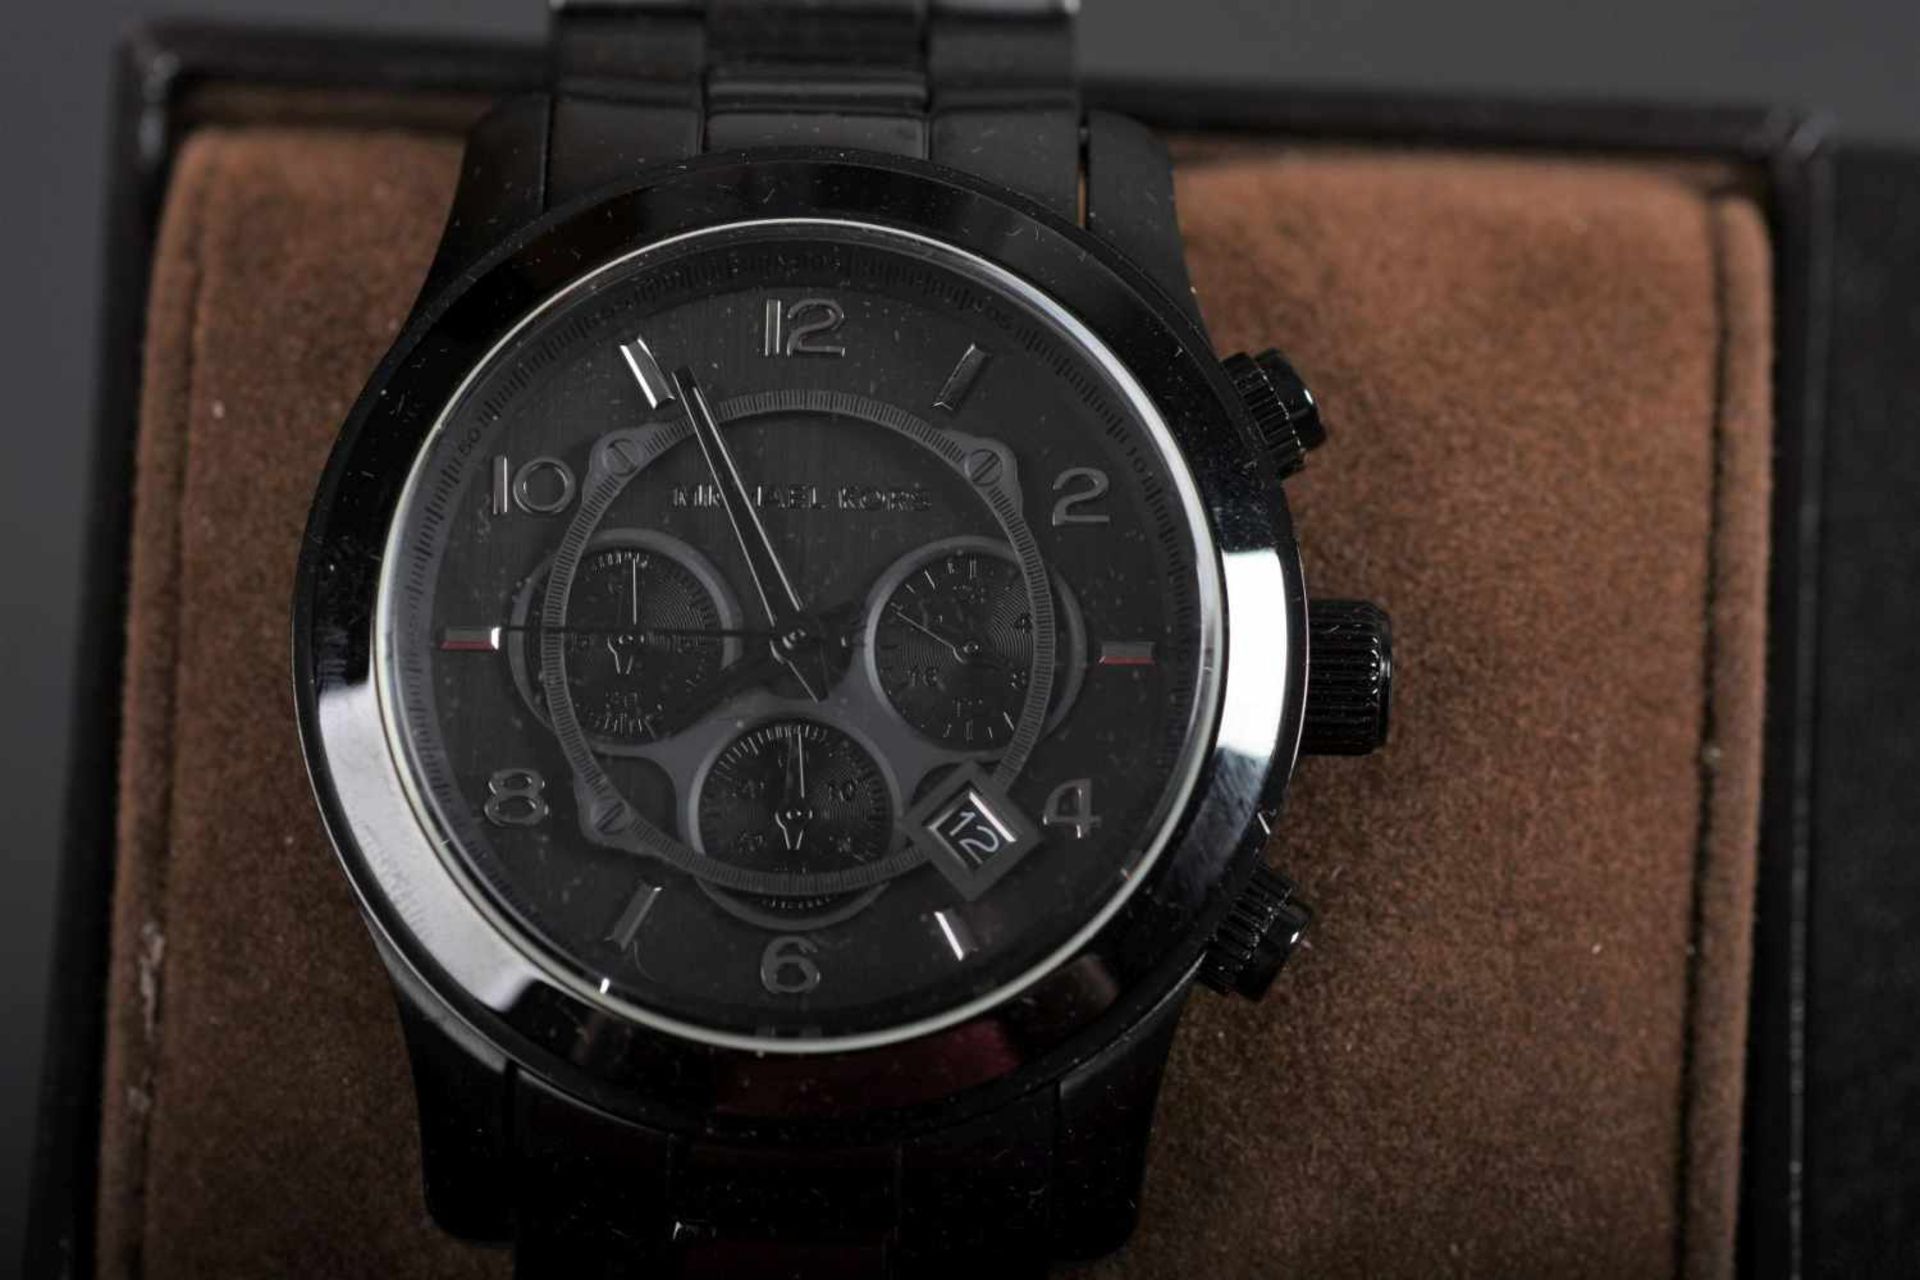 Chronograph Michael Kors VD53Herren-Armbanduhr, glanzschwarzes Gehäuse mit schwarzem Ziffernblatt,